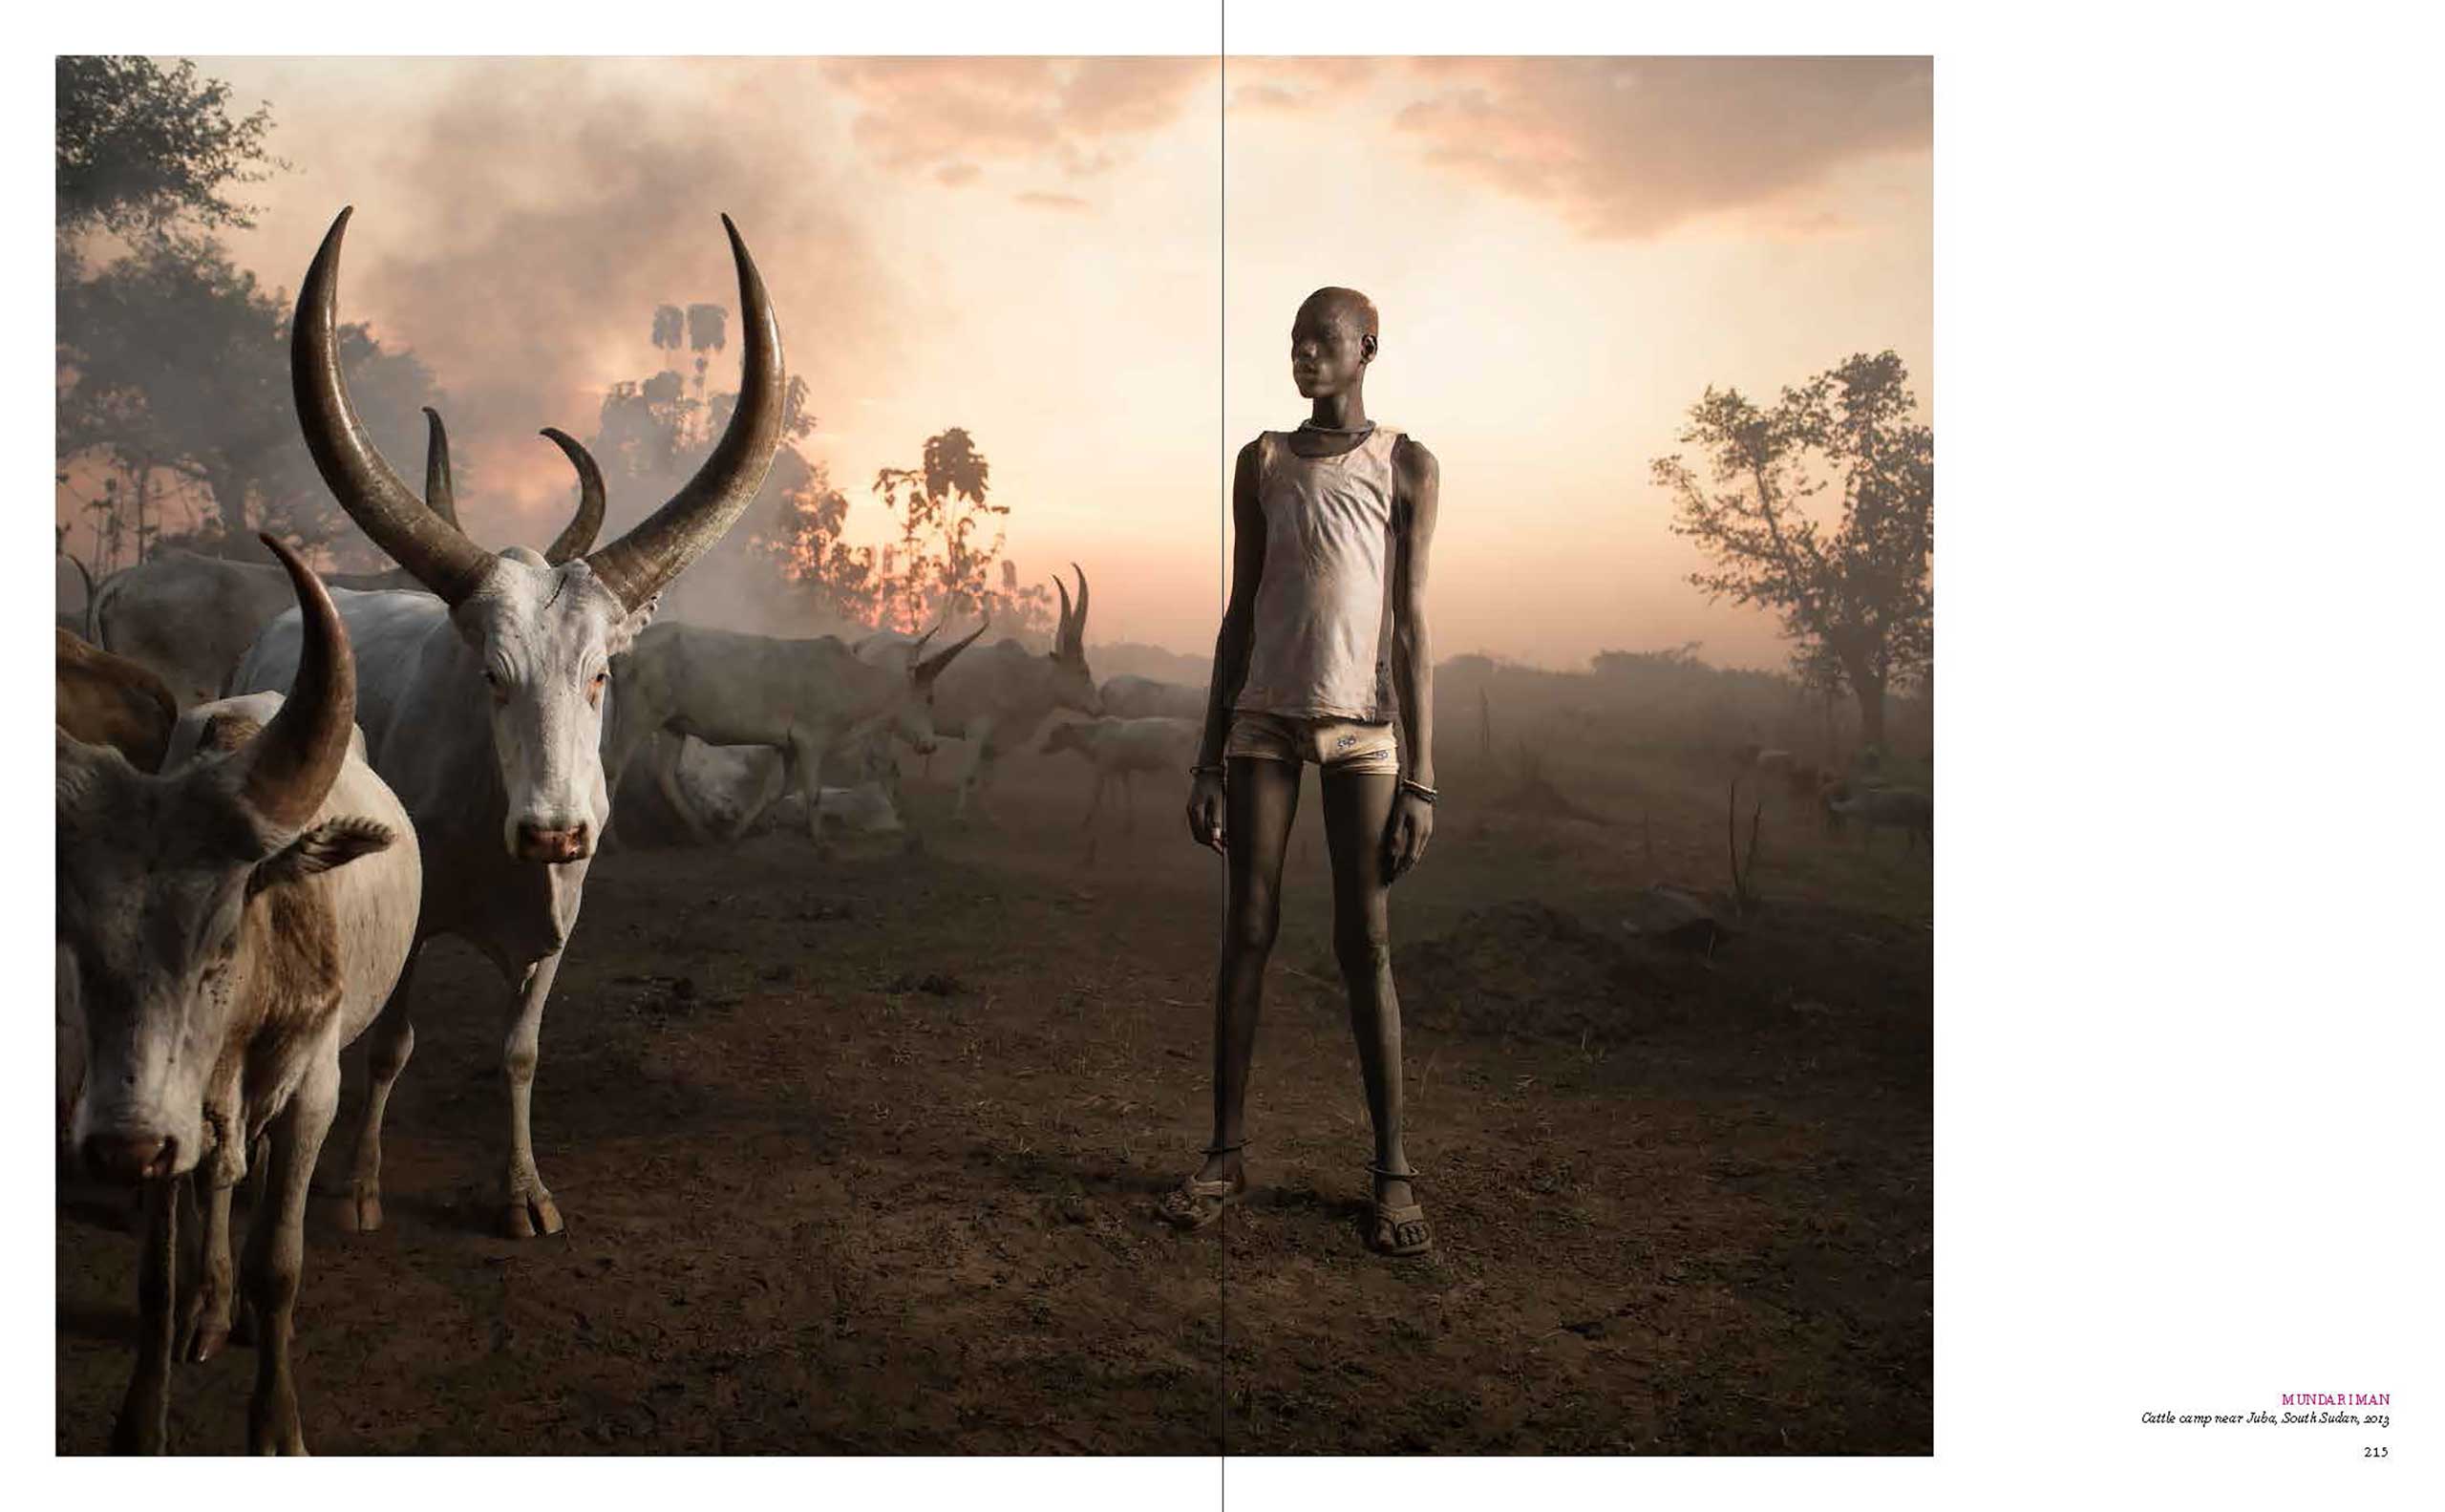 Mundari Man, Cattle camp near Juba, South Sudan, 2013